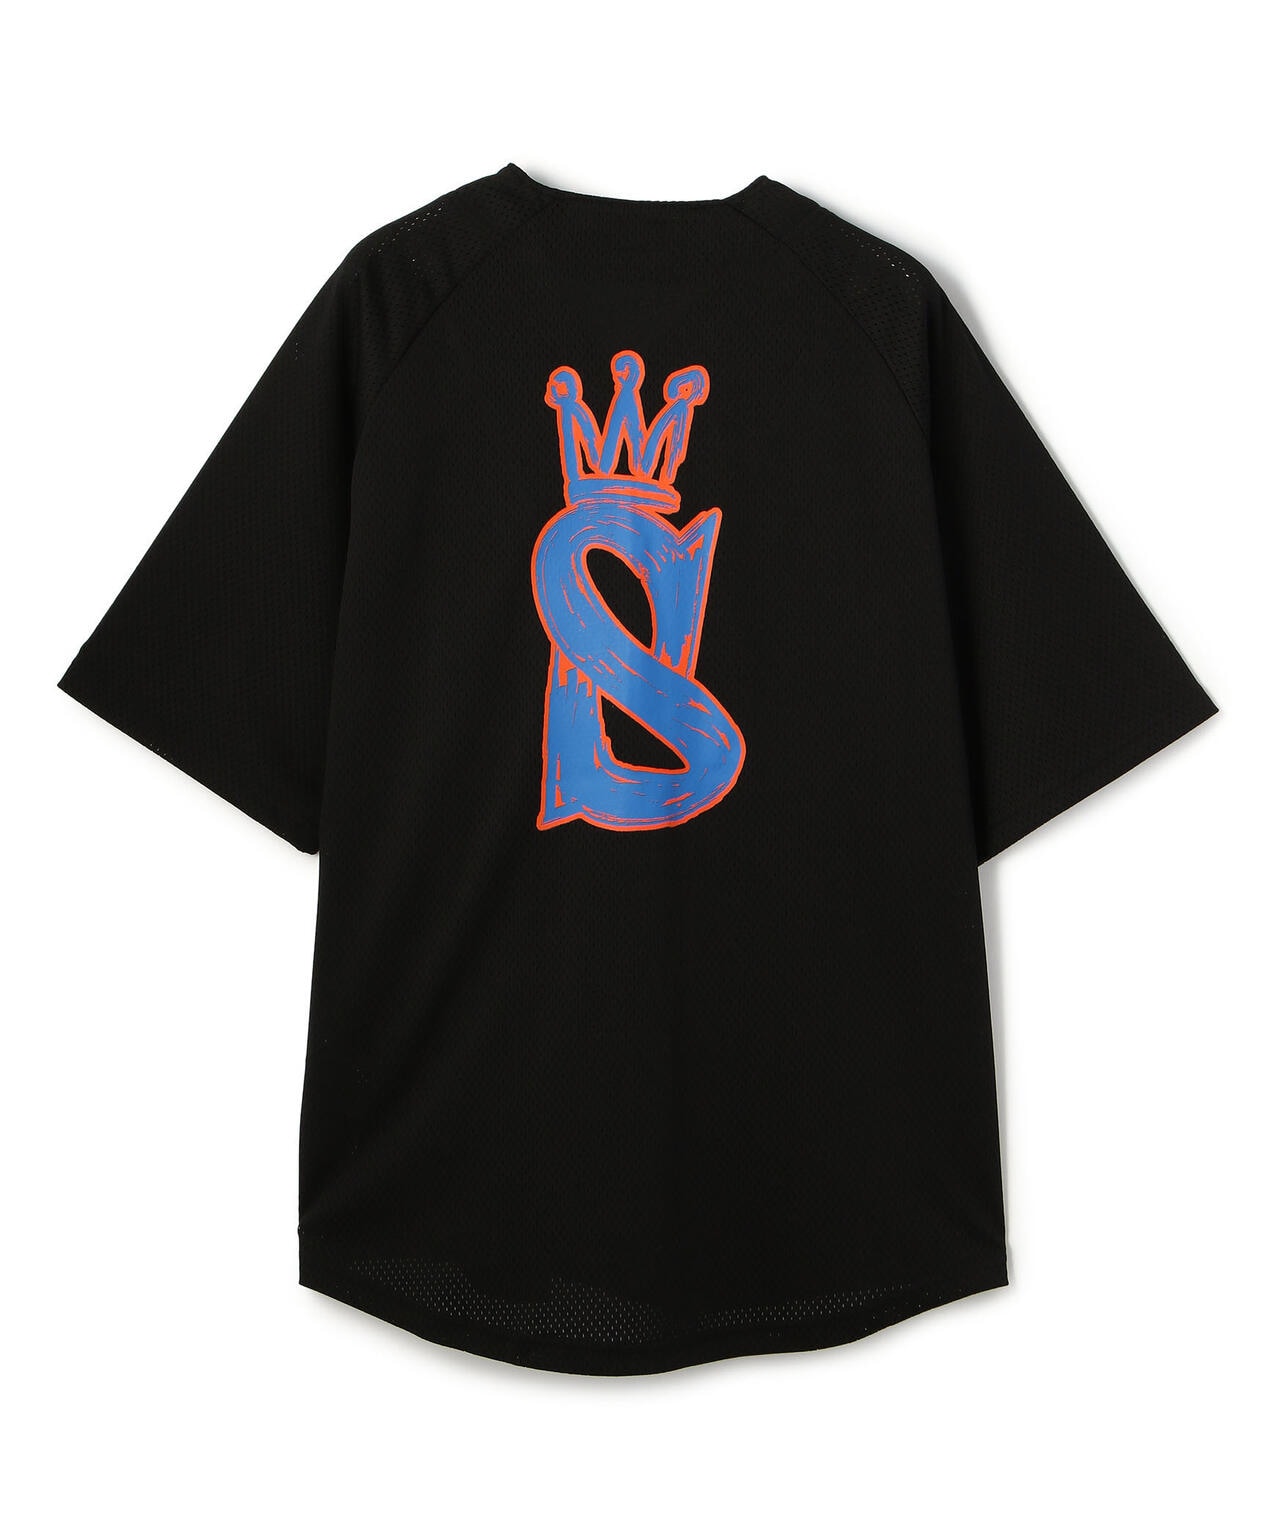 stussy ベースボールシャツ 黒 メッシュ XL - シャツ